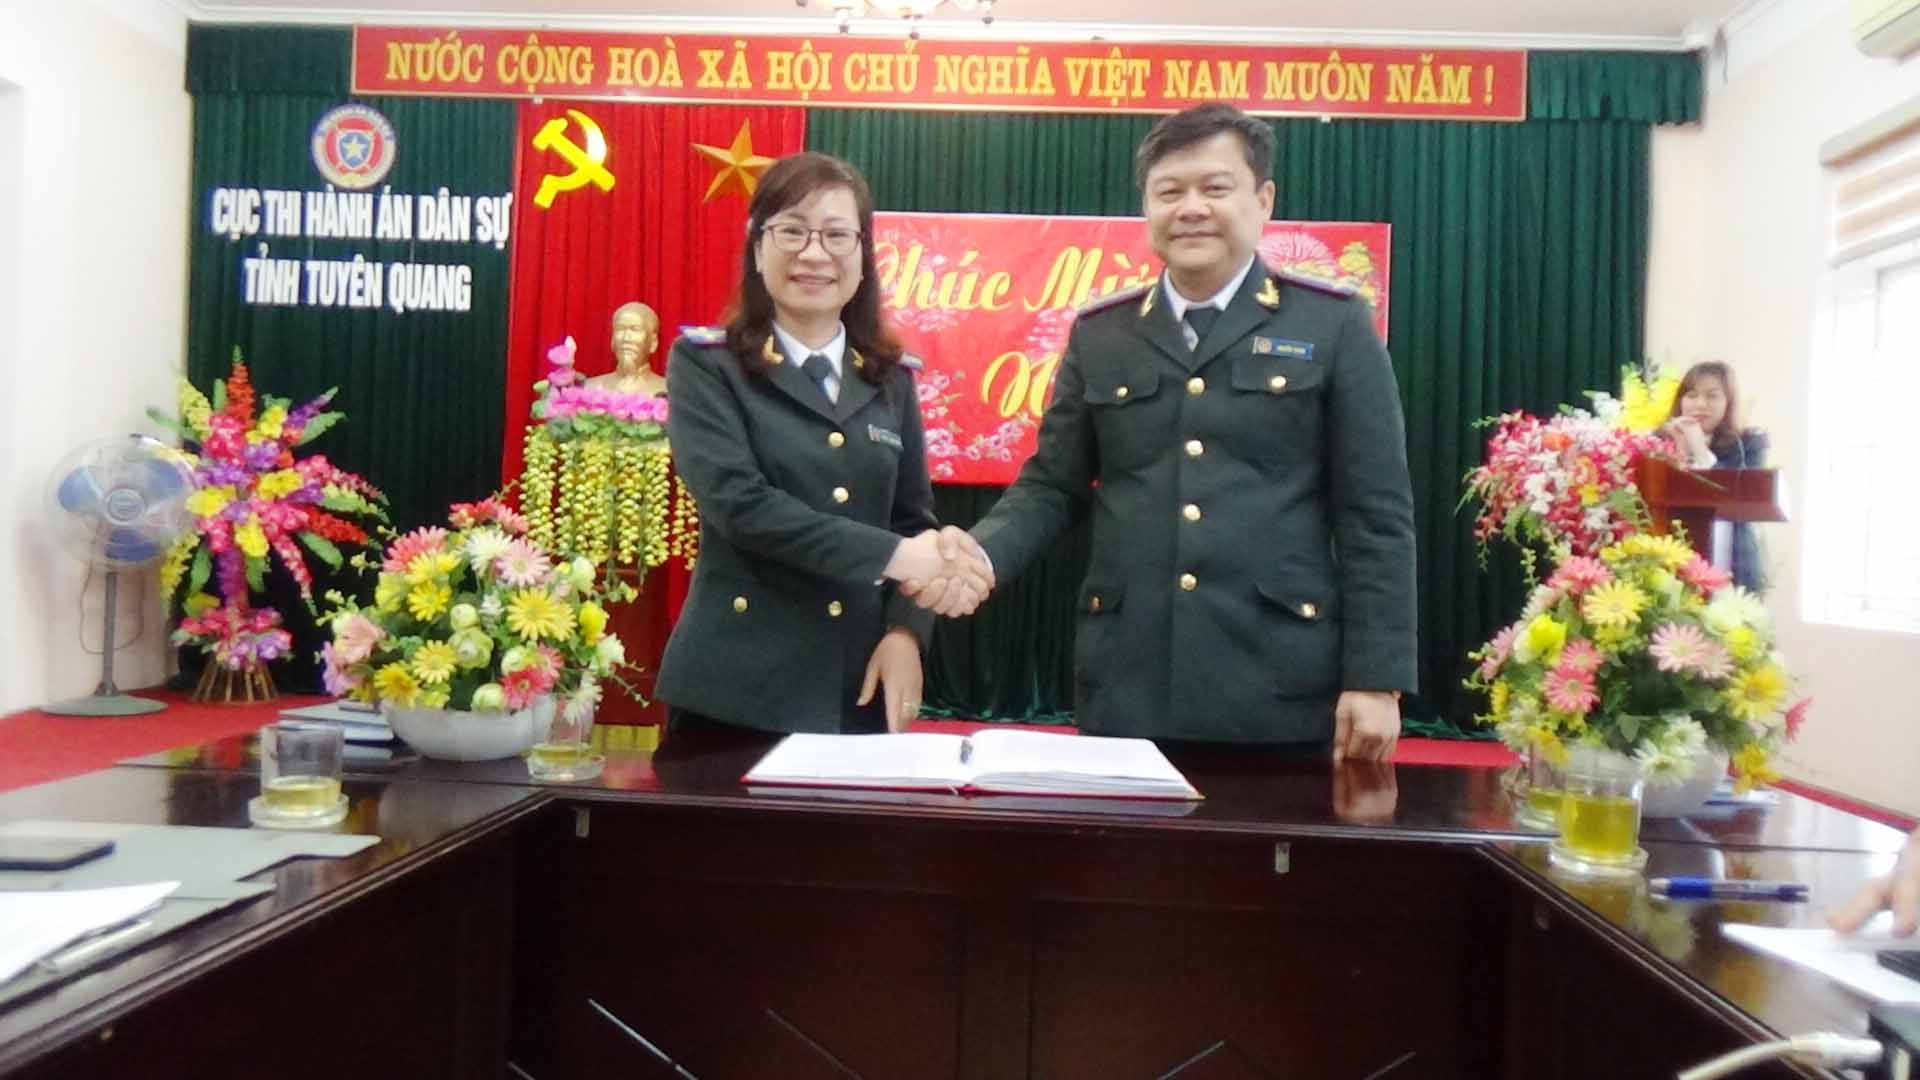 Cục Thi hành án dân sự - Công đoàn Cục Thi hành án dân sự tỉnh Tuyên Quang tổ chức Hội nghị cán bộ, công chức năm 2021.